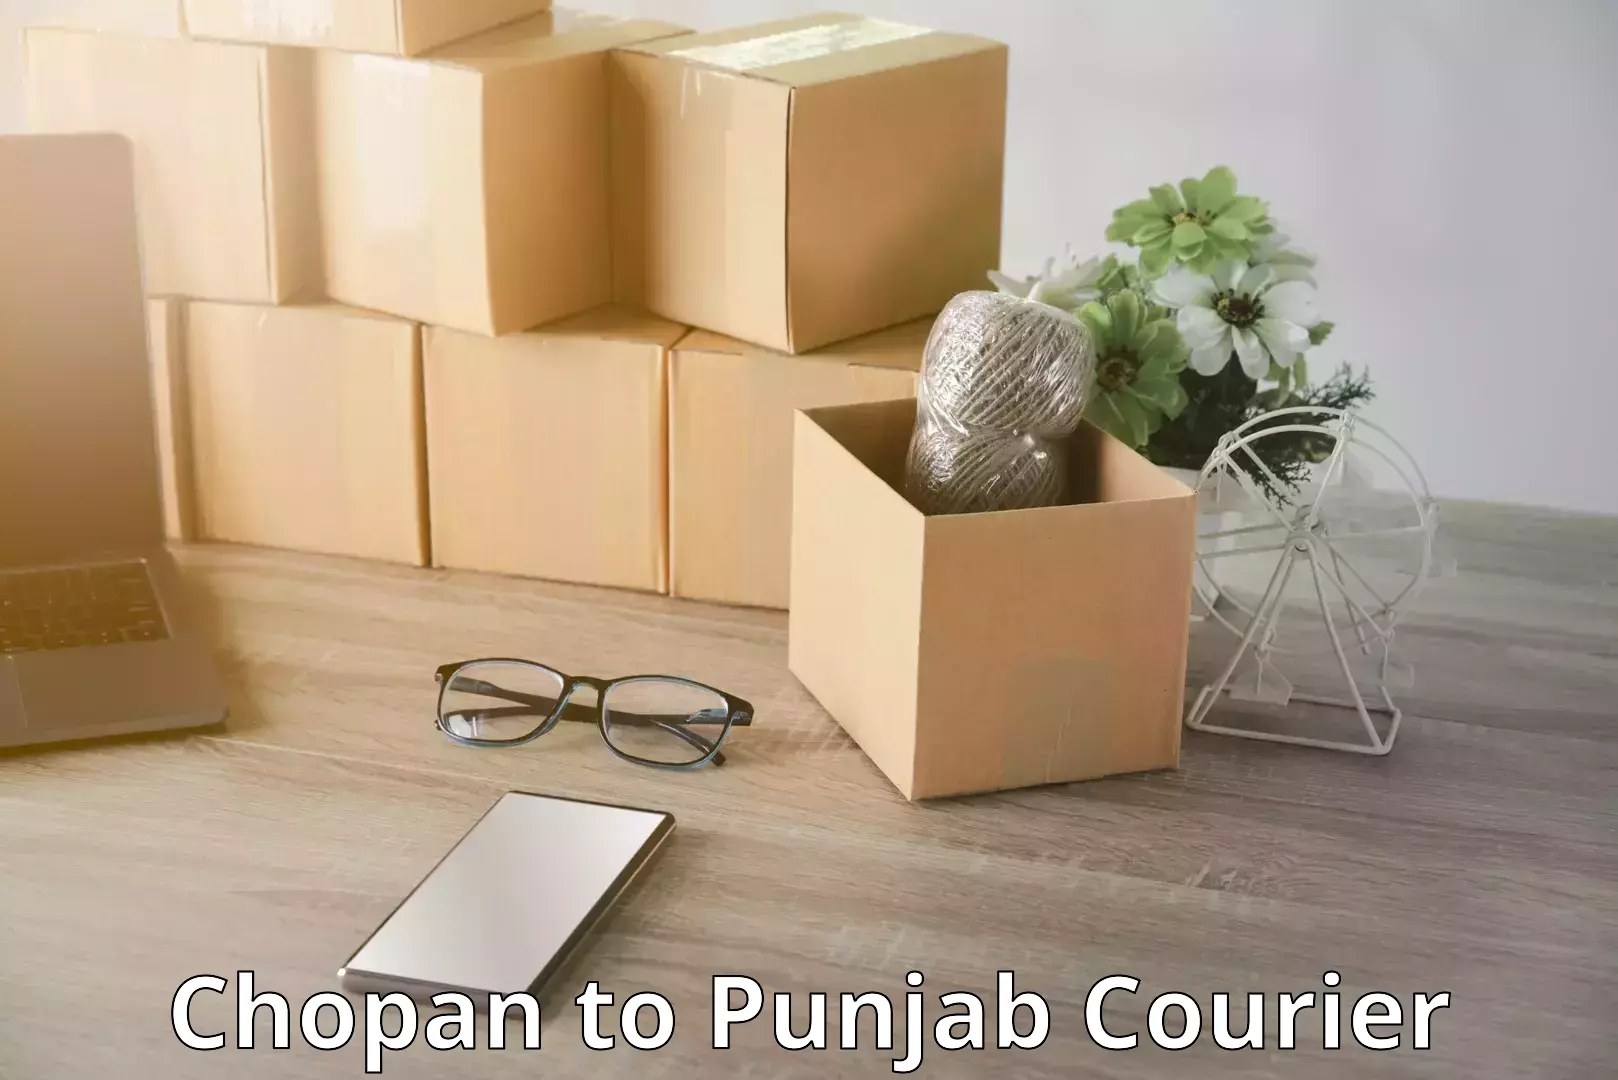 Door-to-door baggage service Chopan to Punjab